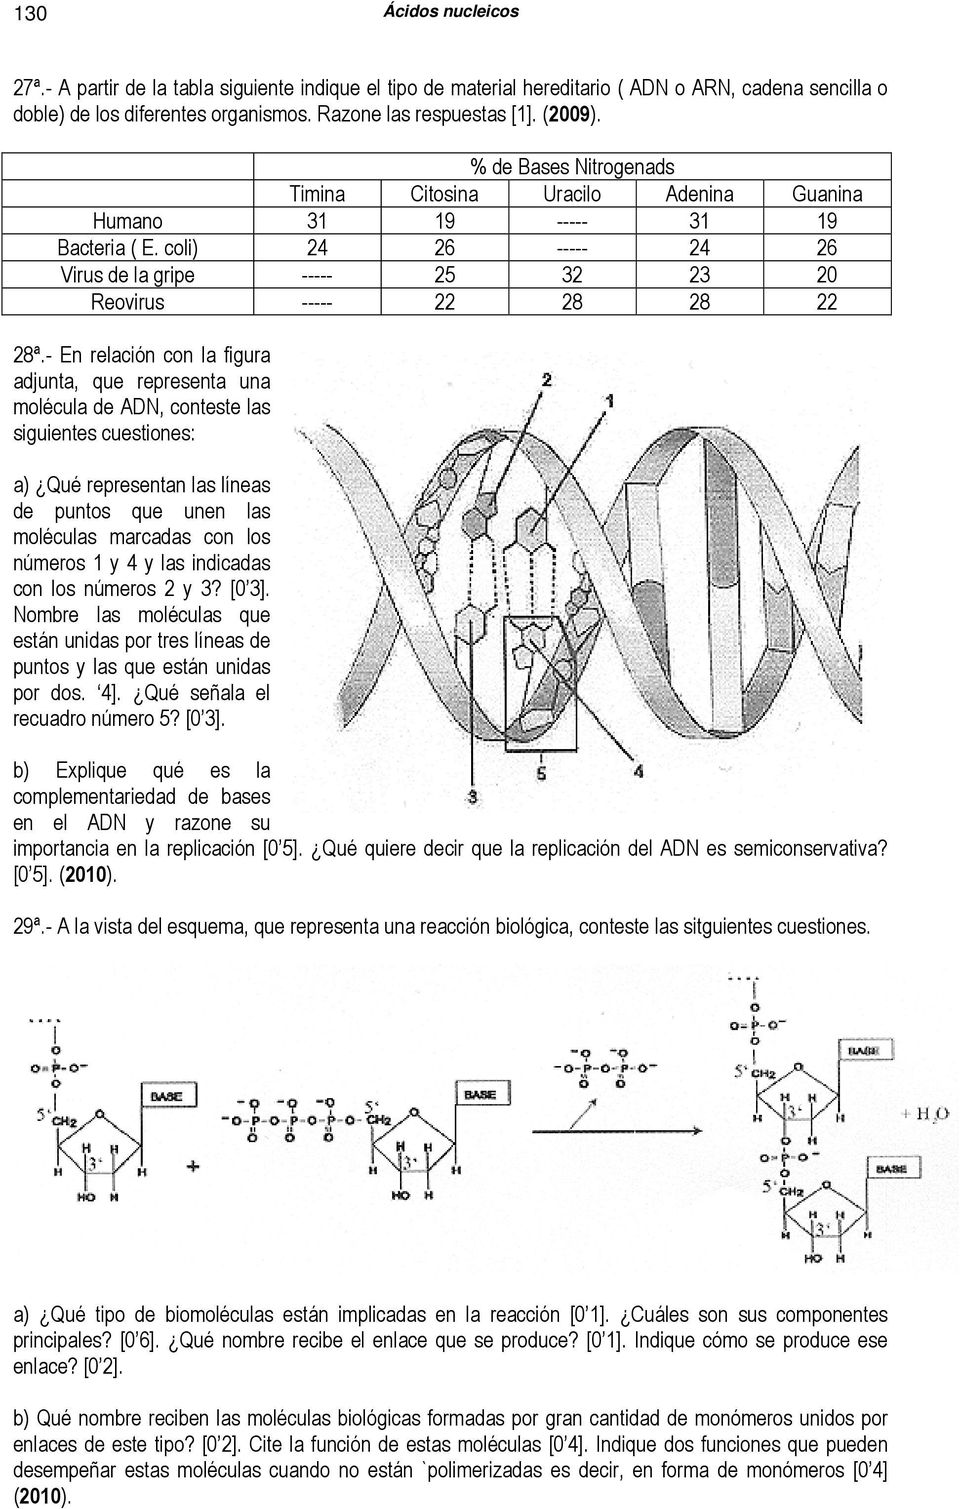 - En relación con la figura adjunta, que representa una molécula de ADN, conteste las siguientes cuestiones: a) Qué representan las líneas de puntos que unen las moléculas marcadas con los números 1